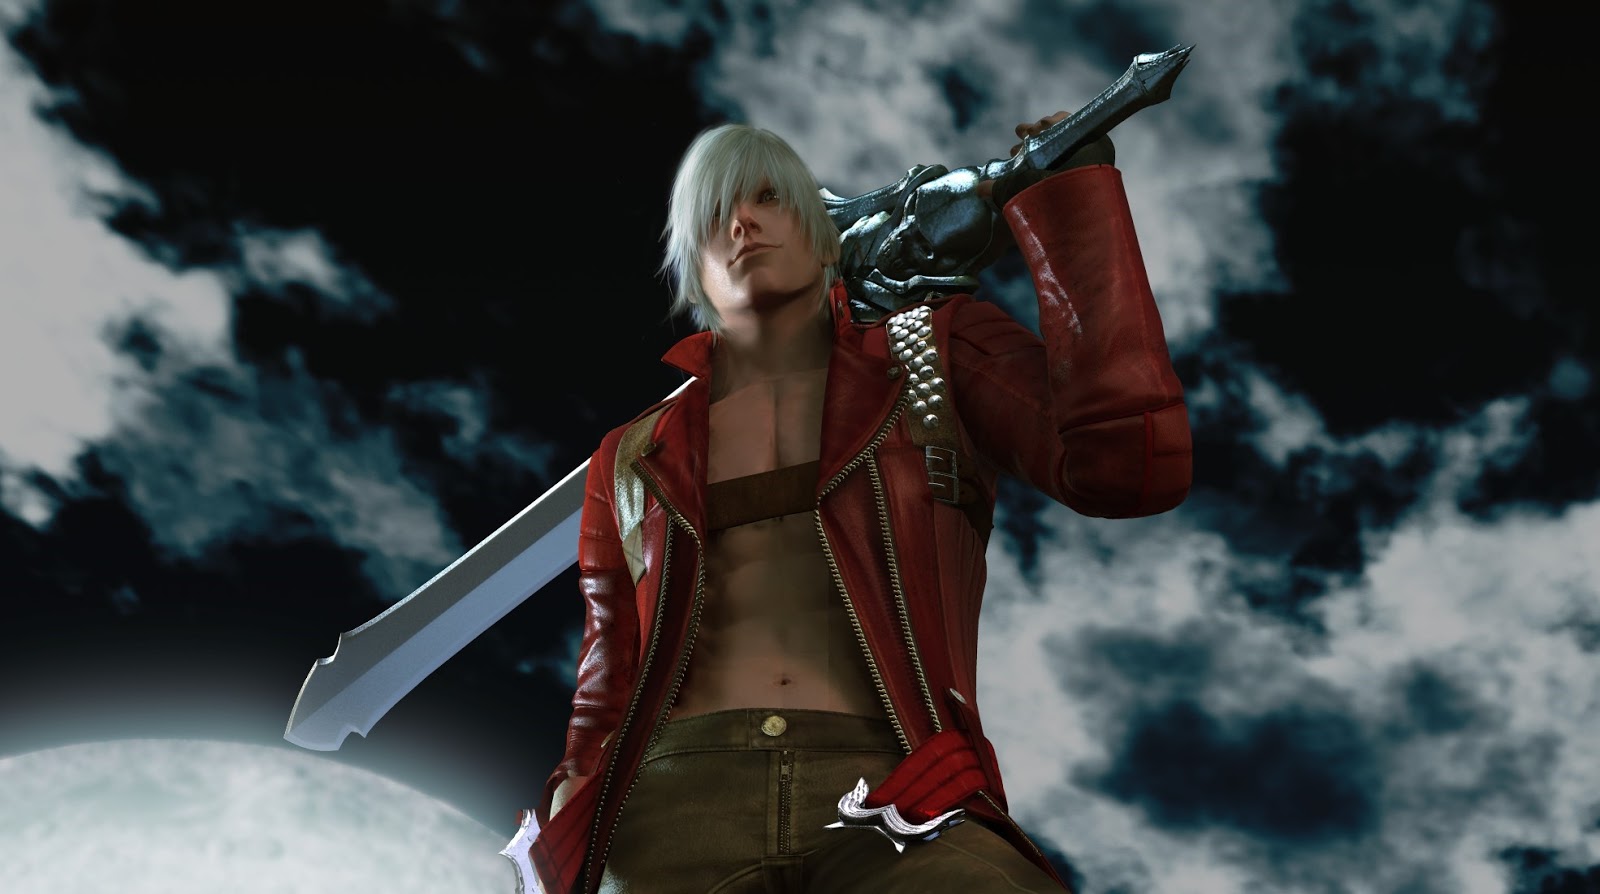 Capcom mostra as armas de Dante em Devil May Cry 5